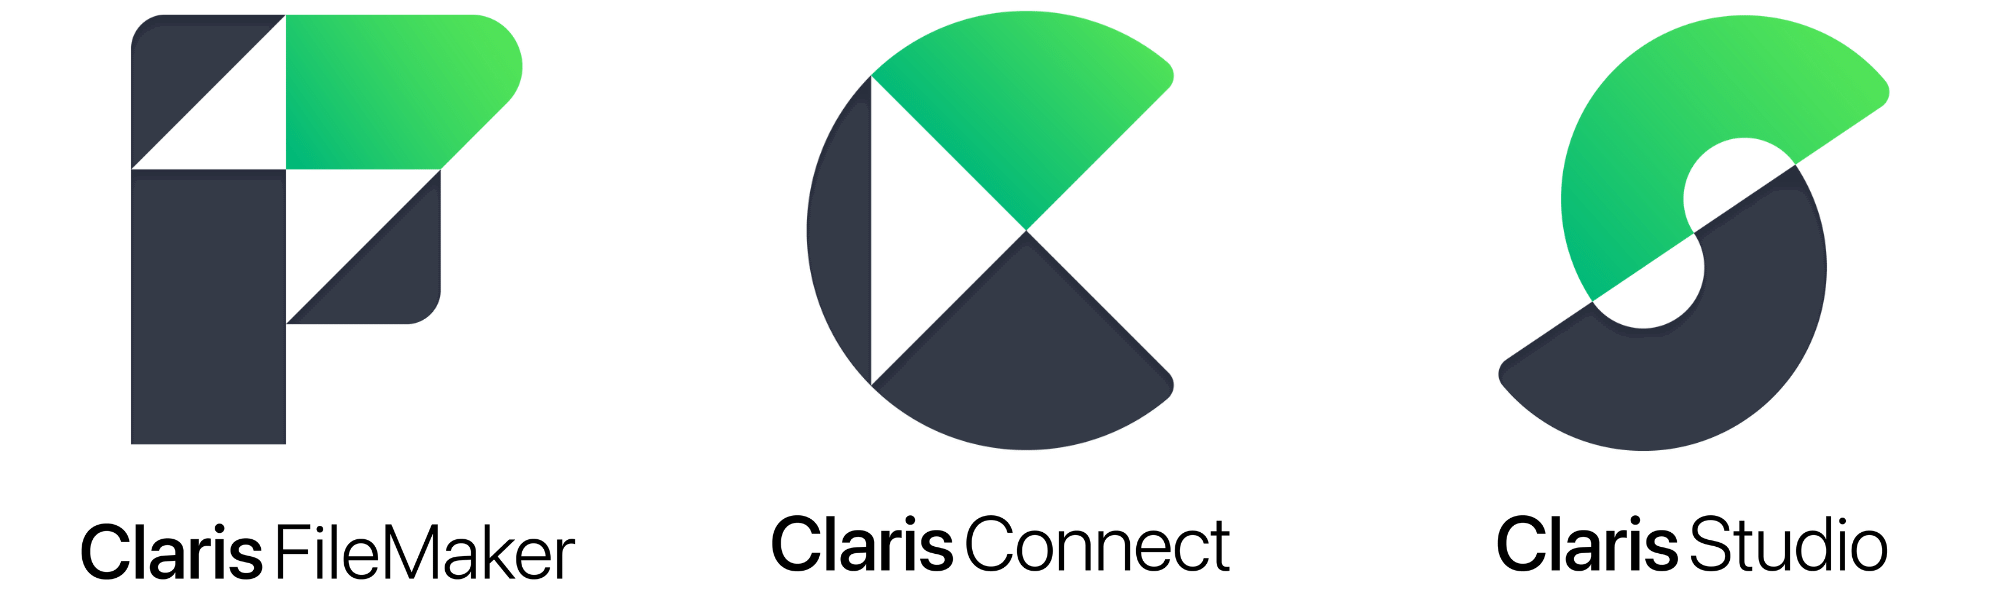 Claris Platform